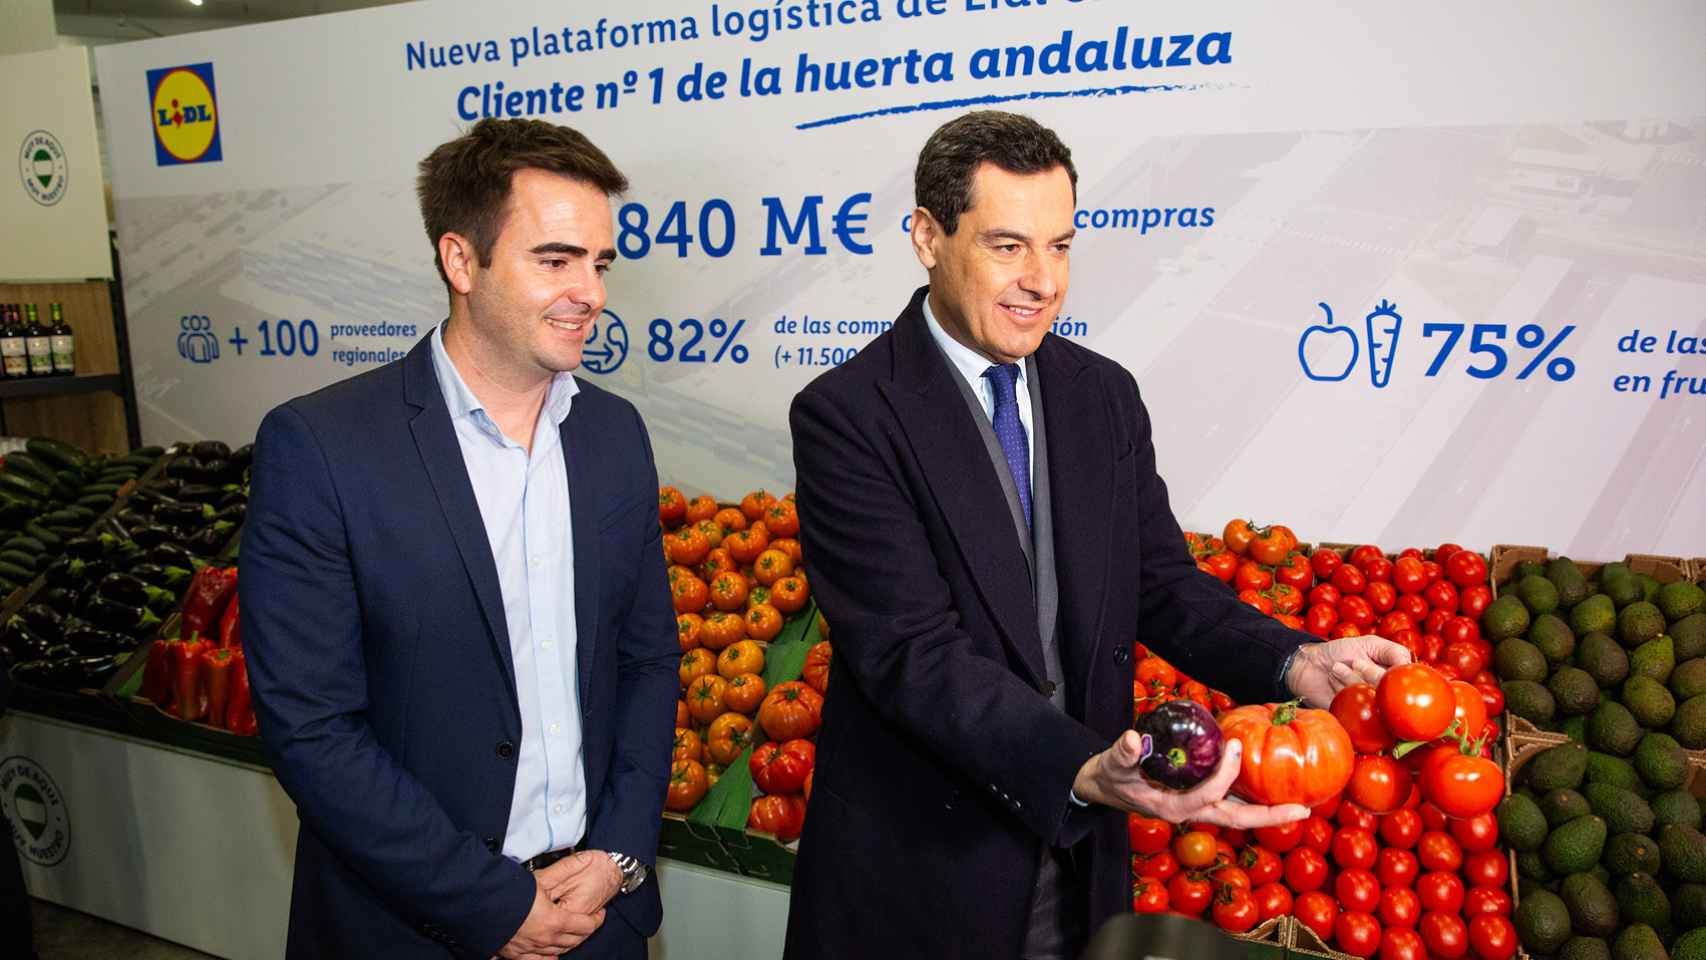 Carlos Martínez, director regional de Lidl en Andalucía, junto con Juanma Moreno, presidente de la Junta de Andalucía